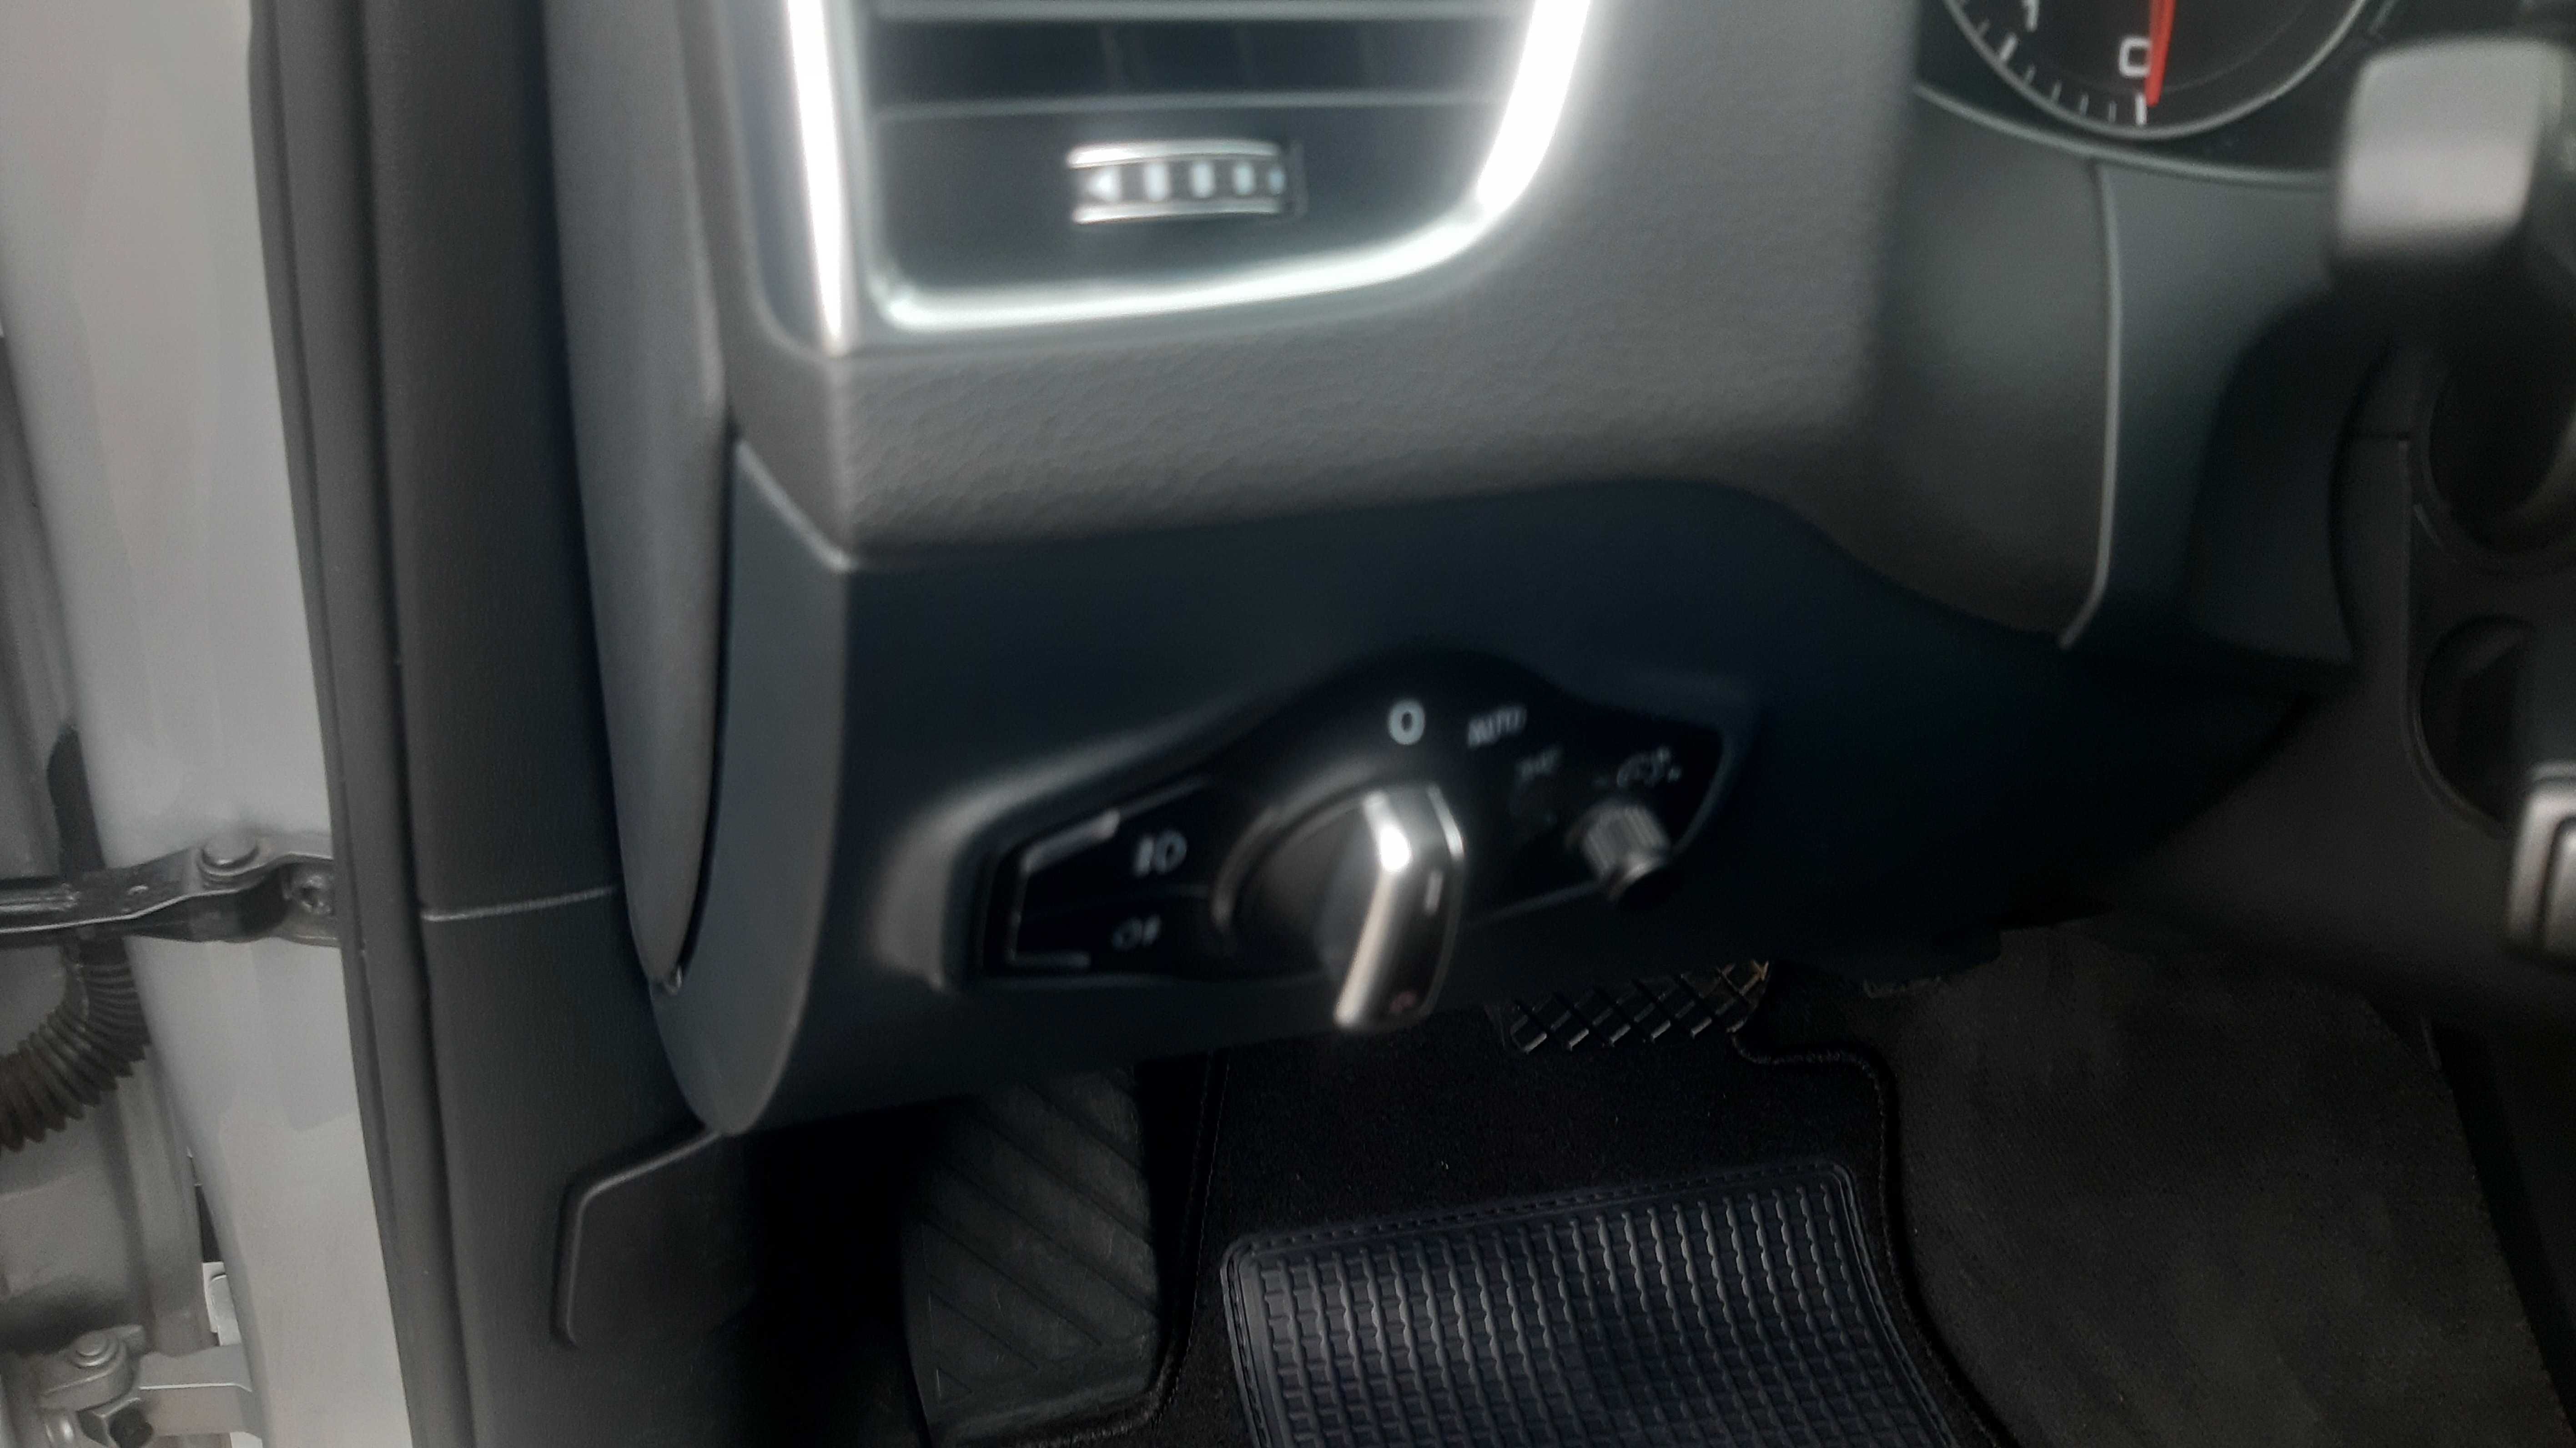 Audi Q5 Quattro 2014 (2013) р.в., Premium Plus